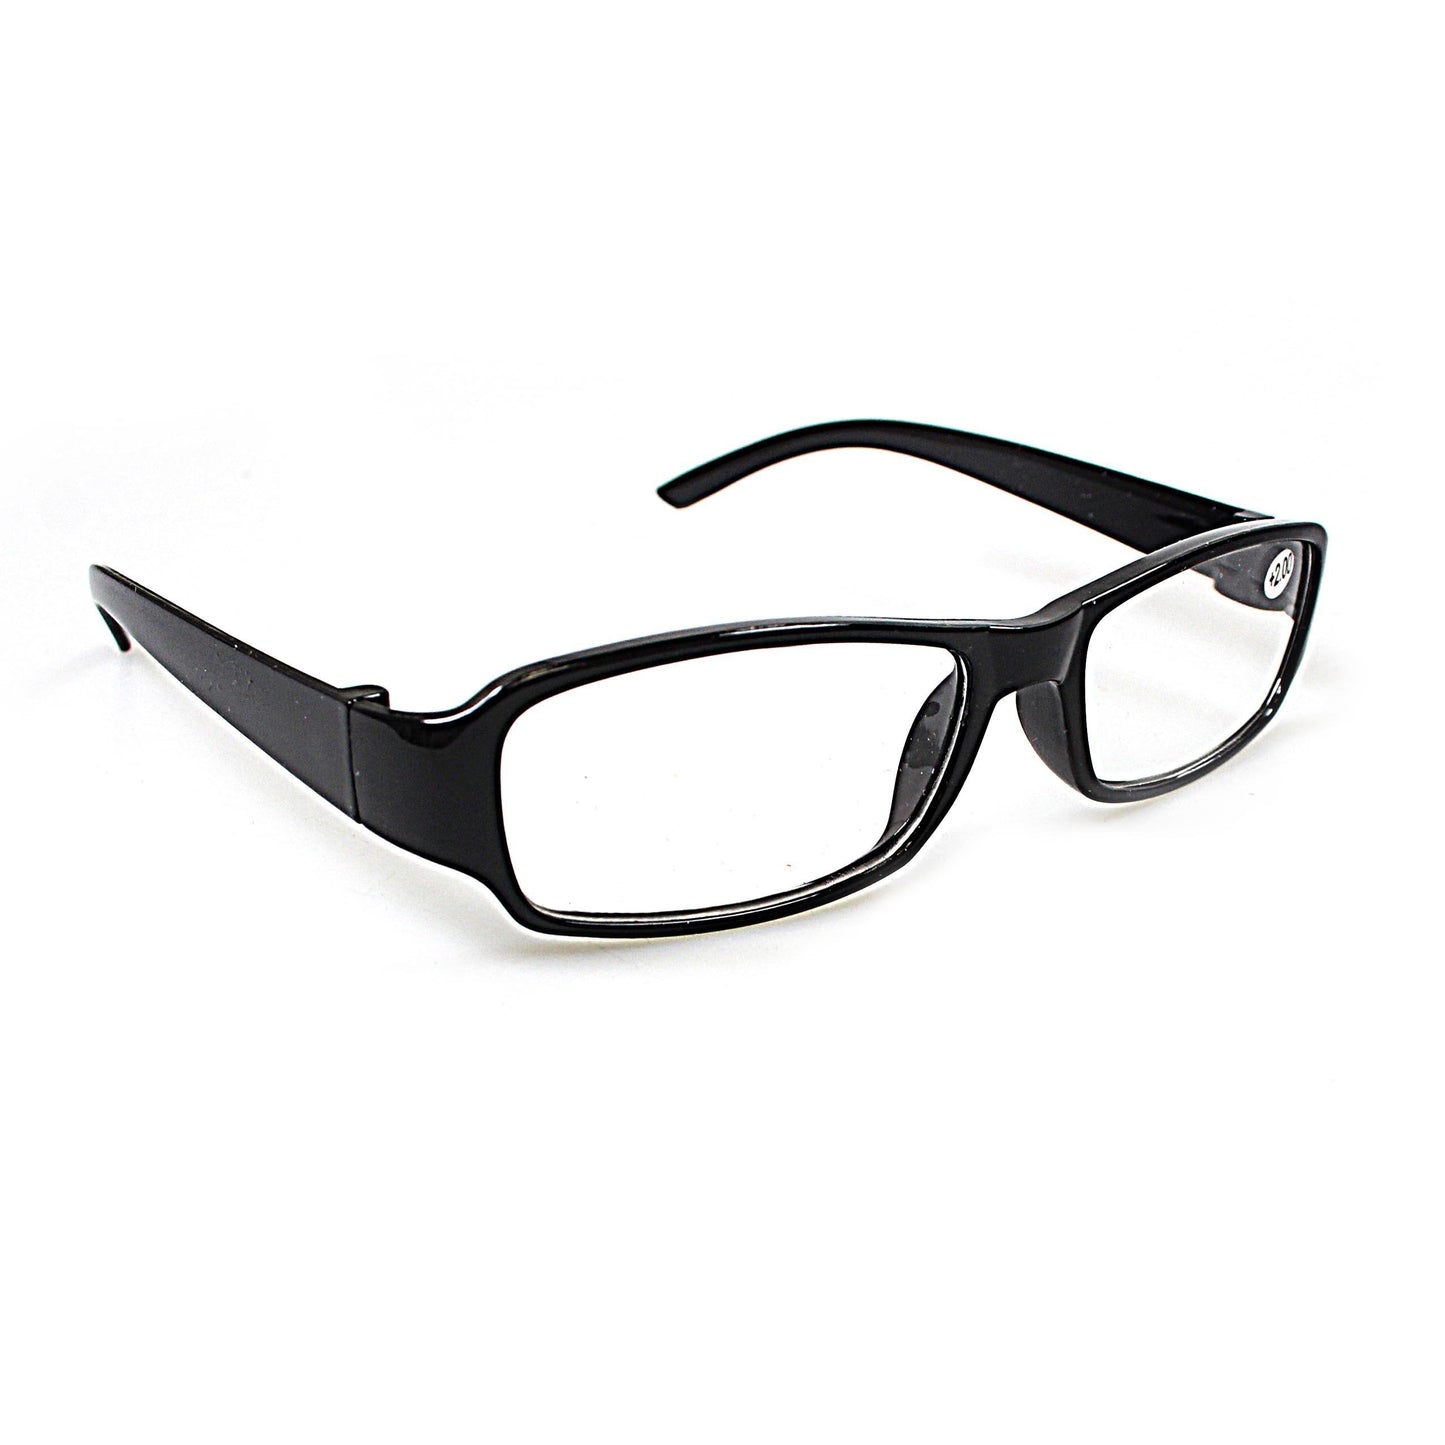 Plastic Calani Black Reading Glasses +3.00 BOX300 (Parcel Rate)